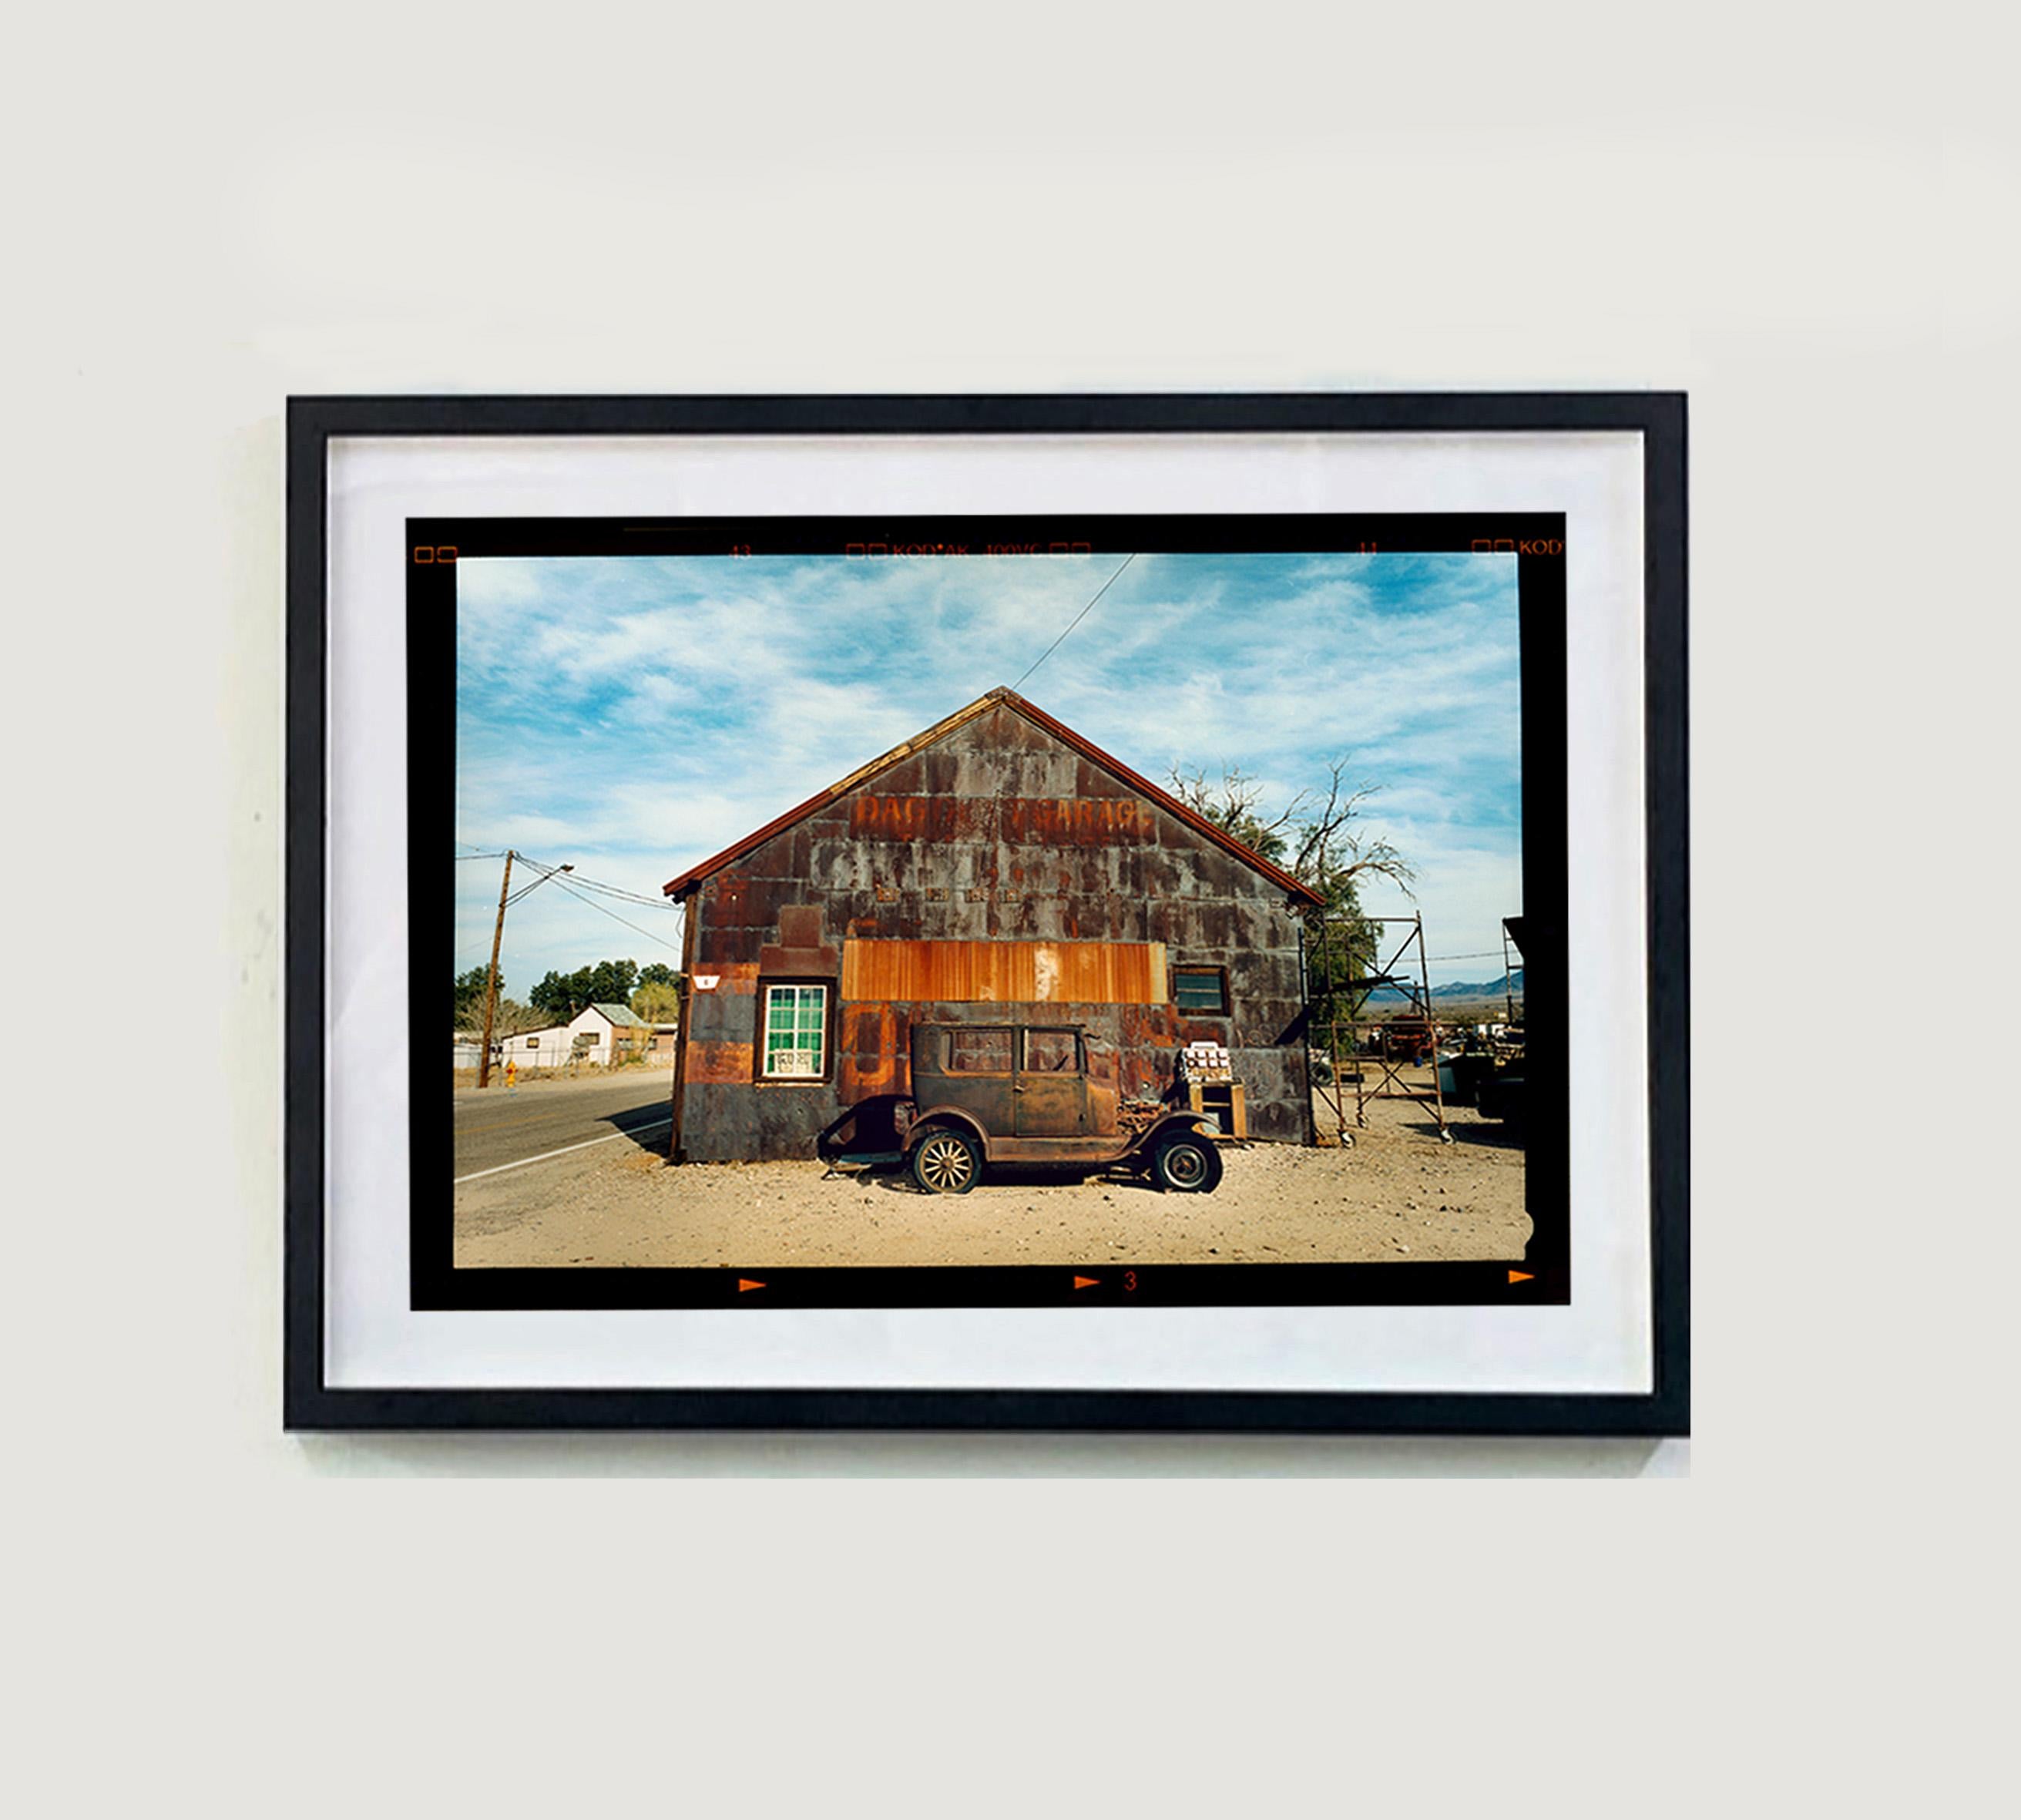 Modell T und Garage, Daggett, Kalifornien – Farbfotografie – Photograph von Richard Heeps